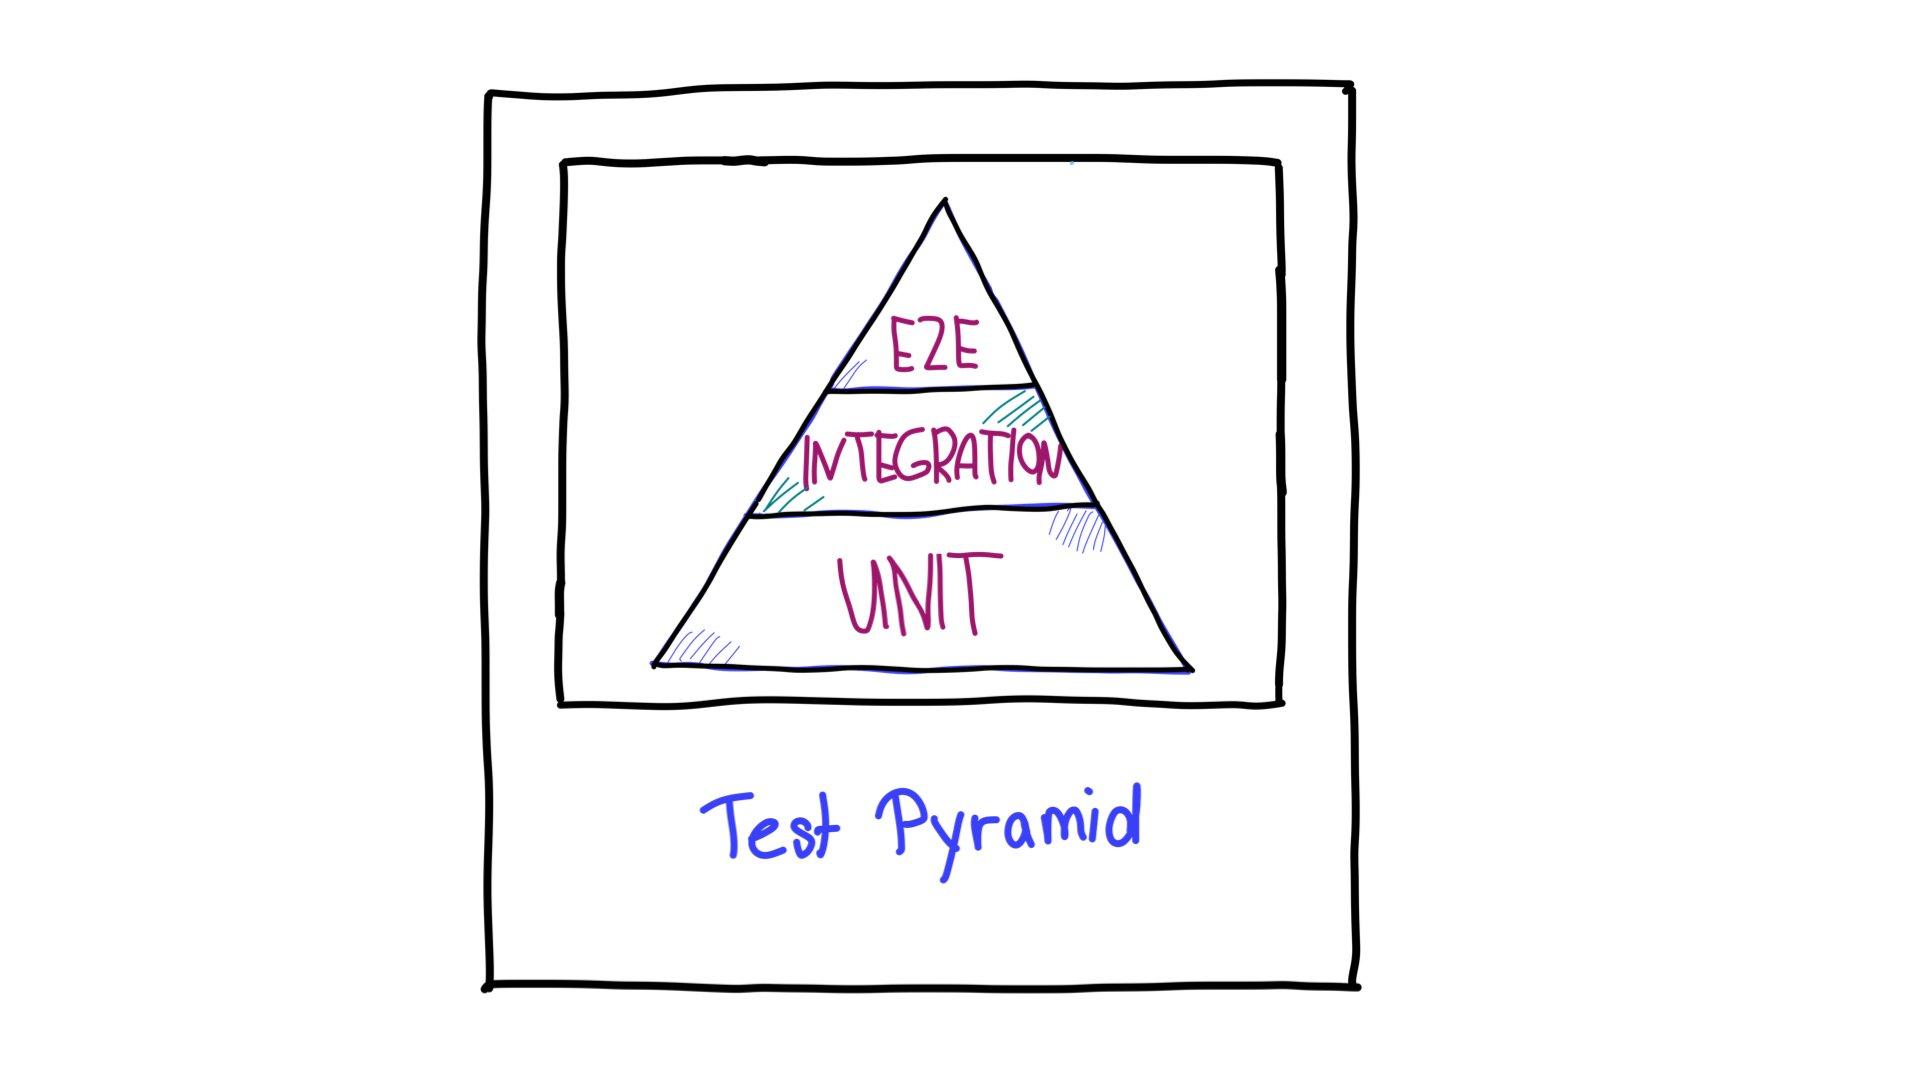 Kim tự tháp kiểm thử, với các kiểm thử toàn diện (E2E) ở trên cùng, các kiểm thử tích hợp ở giữa và các kiểm thử đơn vị ở dưới cùng.